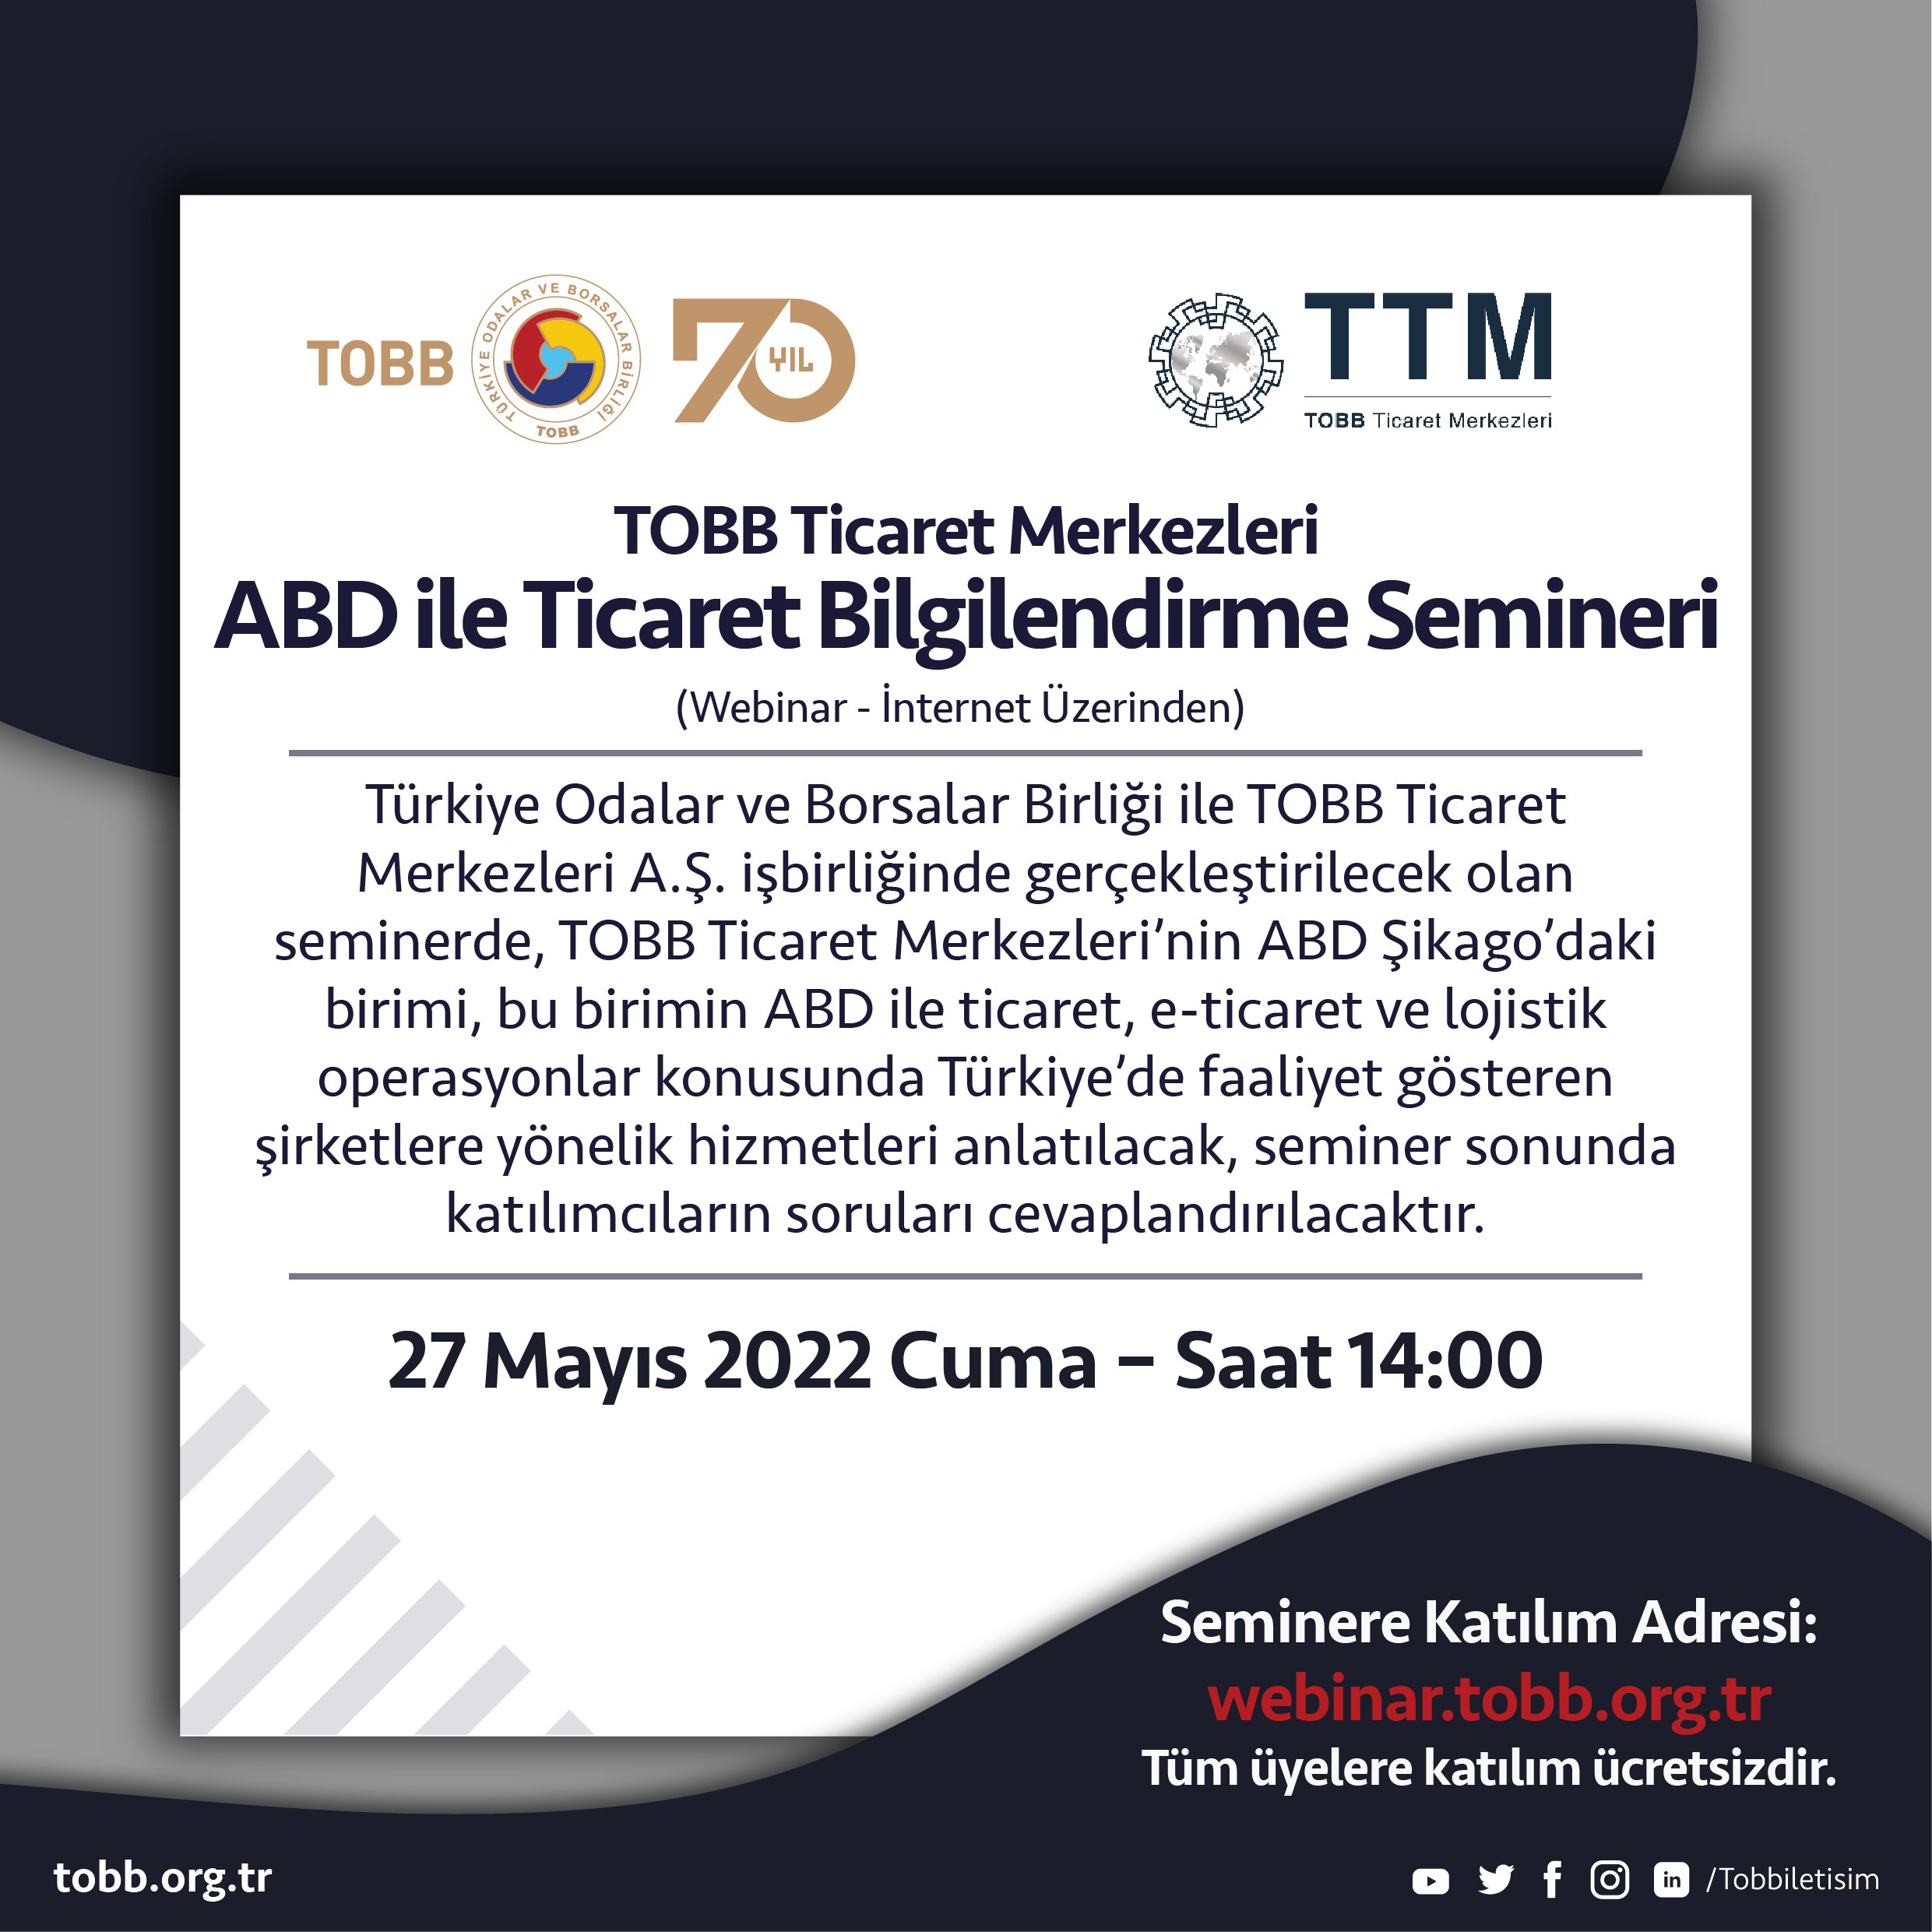 TOBB ve TOBB Ticaret Merkezleri işbirliğiyle 27 Mayıs 2022 Cuma 14:00'te internet üzerinden “ABD ile Ticaret Bilgilendirme Webinarı” gerçekleştirilecektir. Detaylar için http://webinar.tobb.org.tr